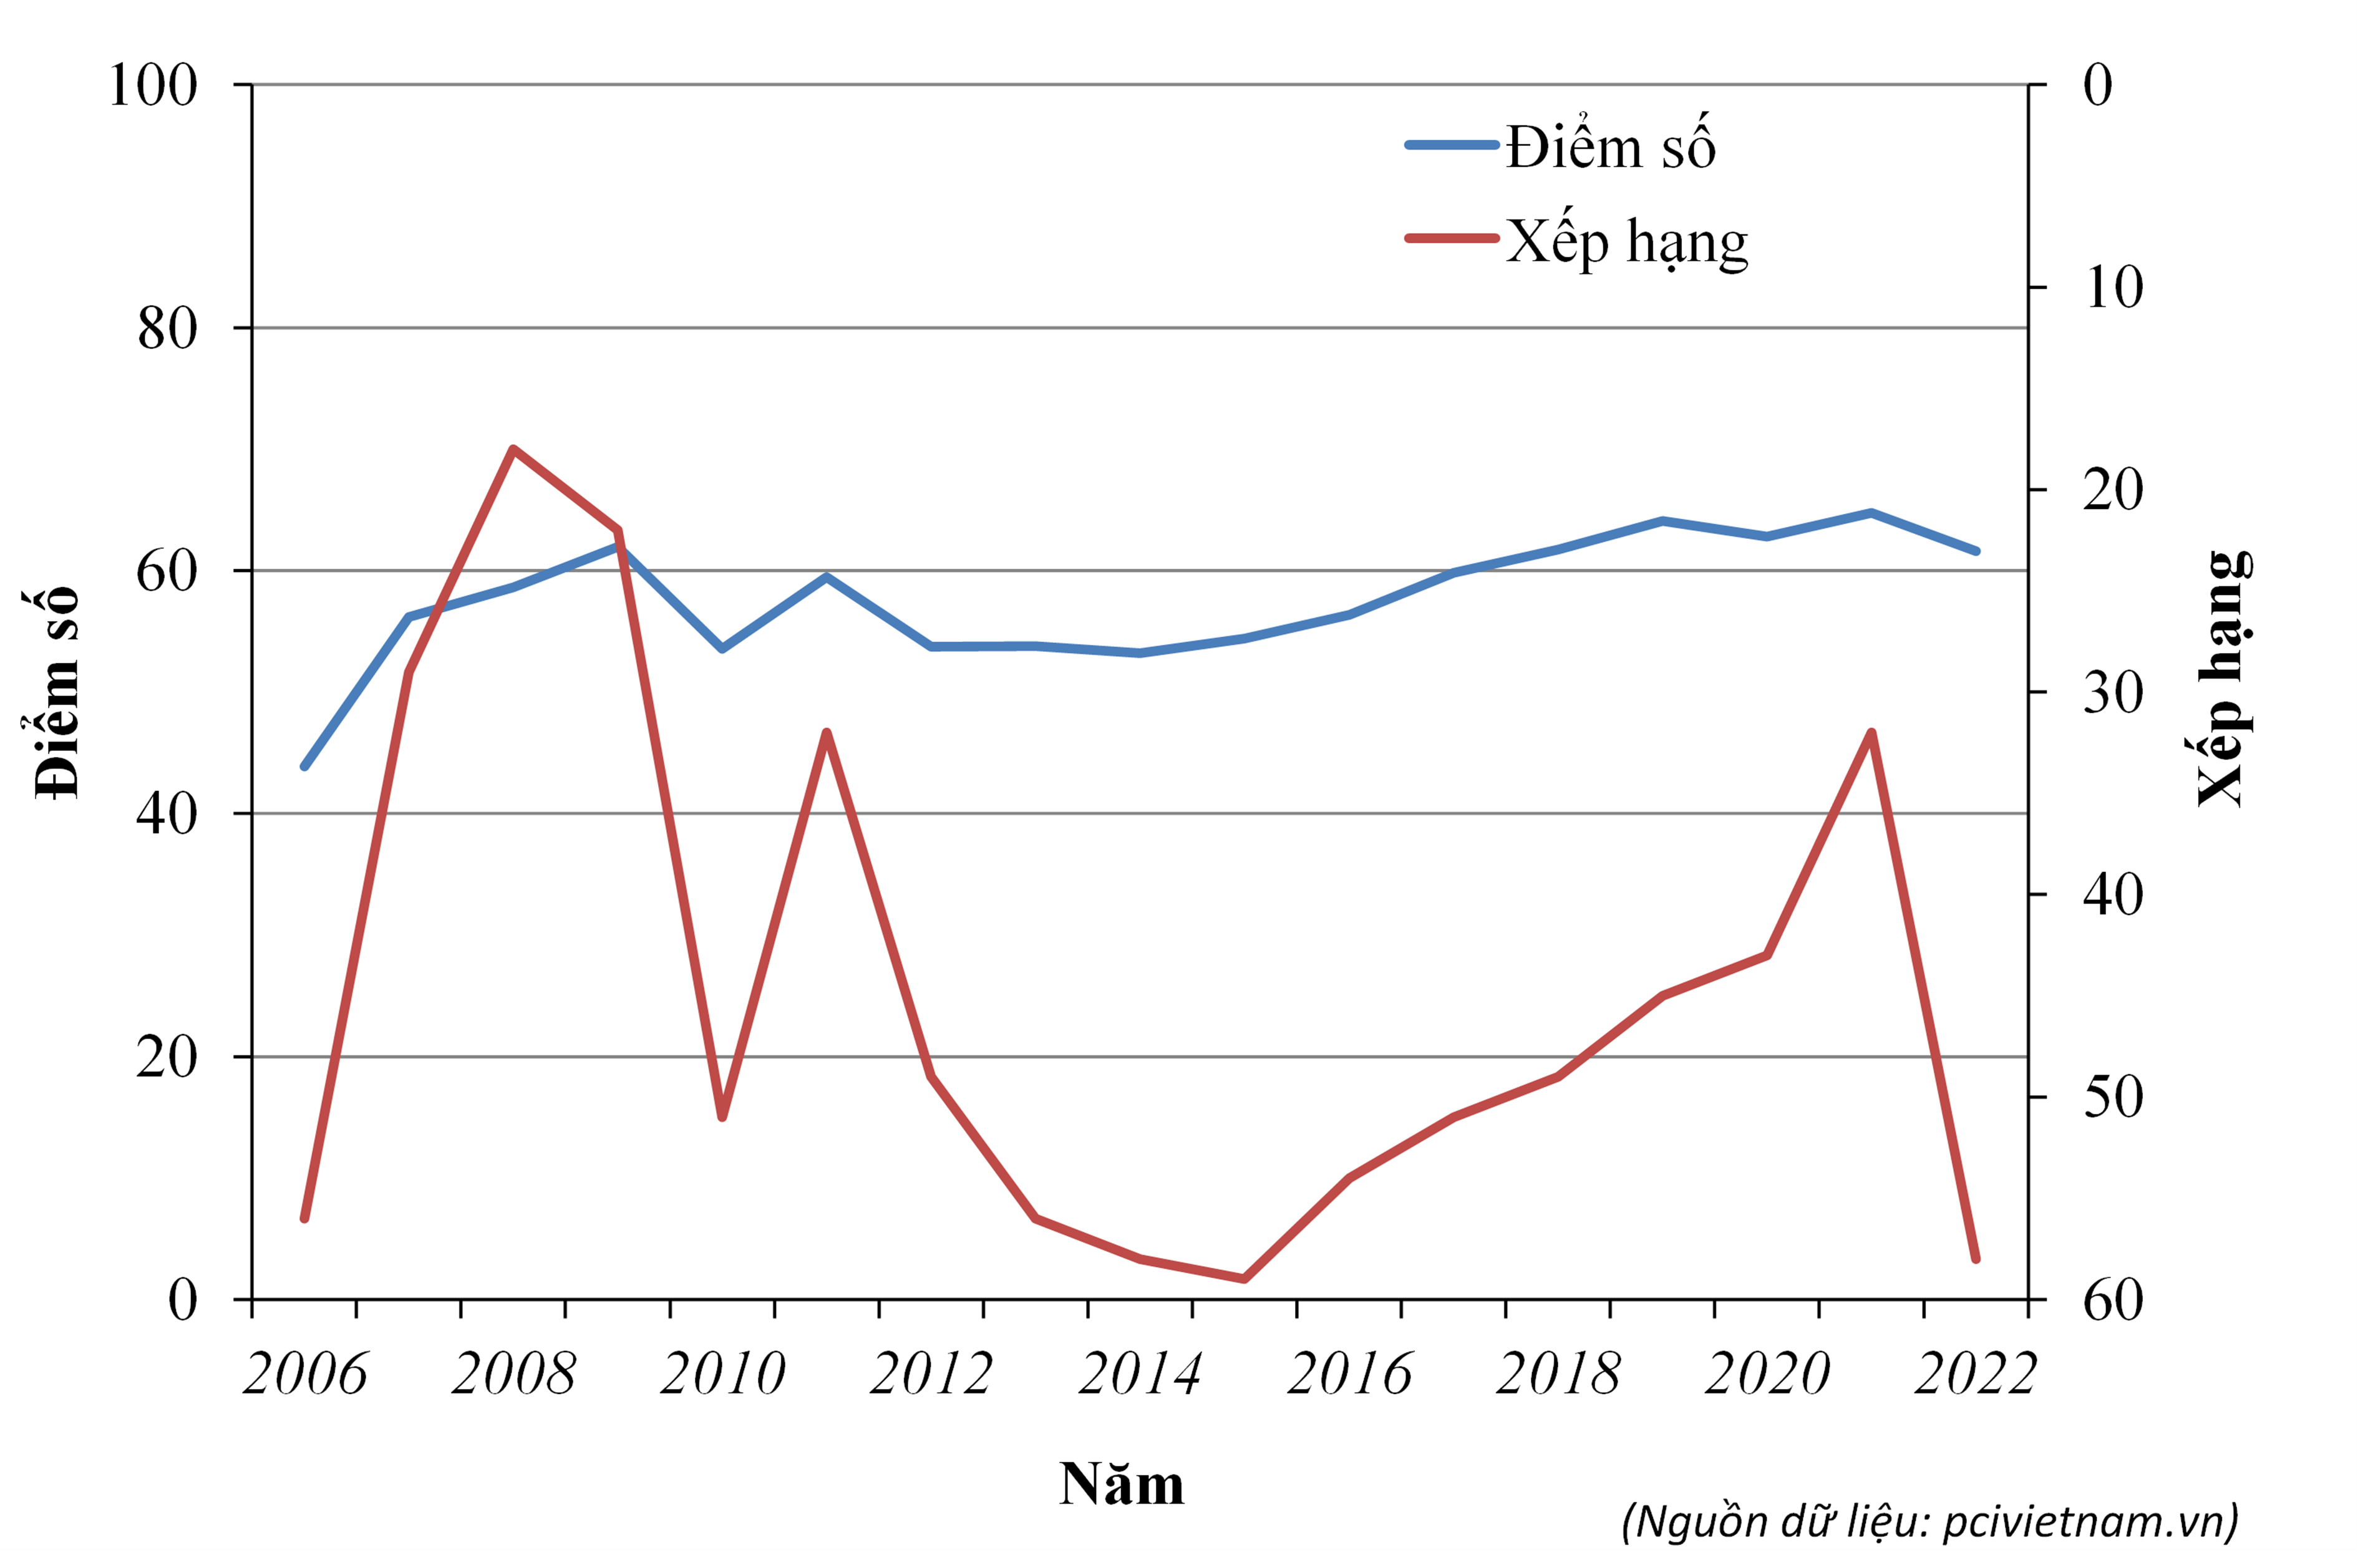 Hình 1. Biểu đồ điểm số và xếp hạng PCI hàng năm của tỉnh Cà Mau từ năm 2006 đến năm 2022 (nguồn dữ liệu: pcivietnam.vn). Điểm số giảm thấp nhưng thứ hạng giảm sâu là minh chứng cho việc nhiều tỉnh, thành trong cả nước đã có sự gia tăng mạnh về điểm số để nâng cao năng lực cạnh tranh của địa phương trong việc tạo môi trường thuận lợi cho doanh nghiệp sản xuất và kinh doanh.